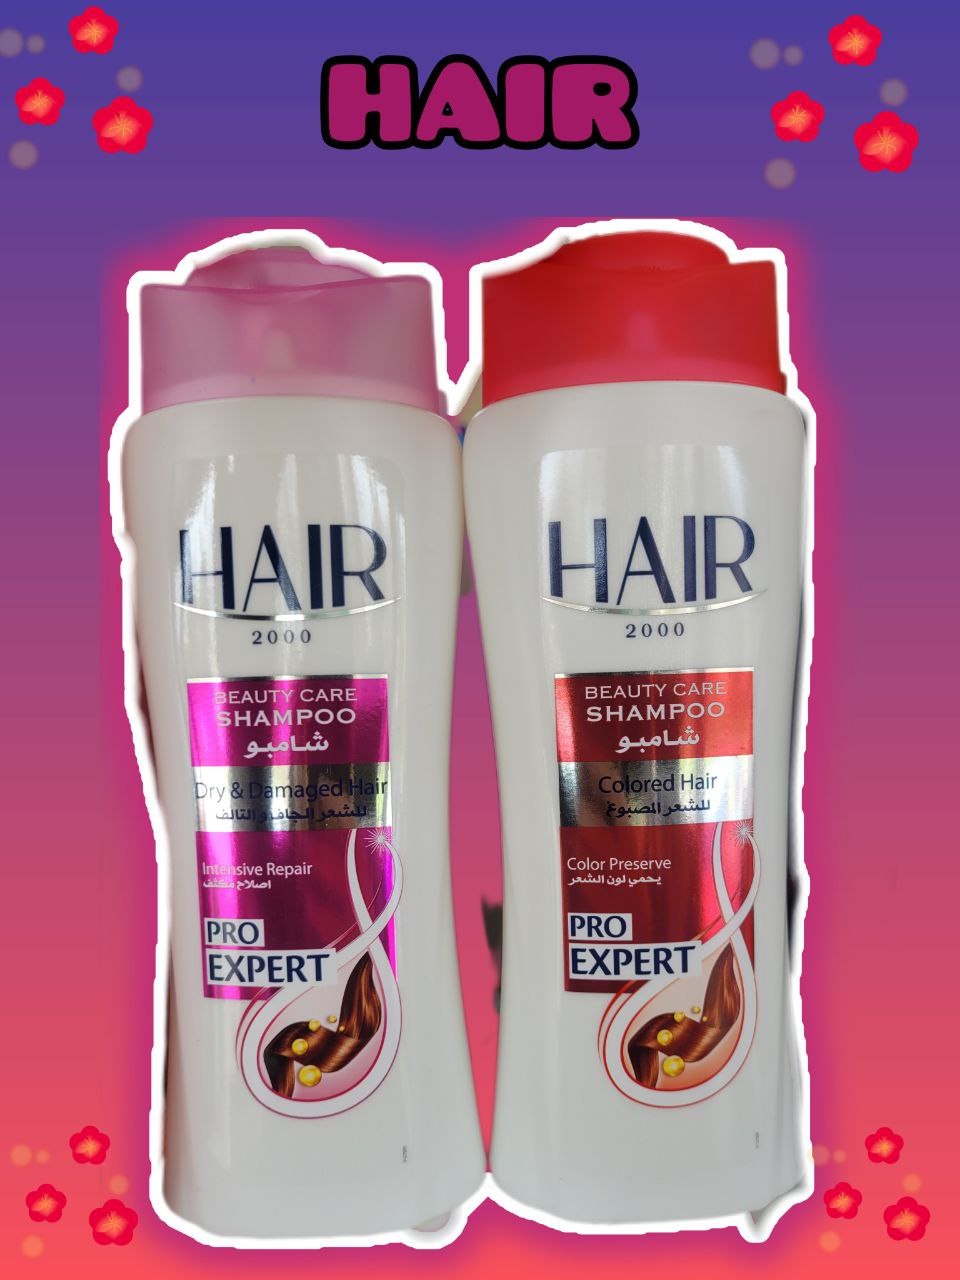 Профессиональный турецкий шампунь для  волос Hair - 300 ₽, заказать онлайн.